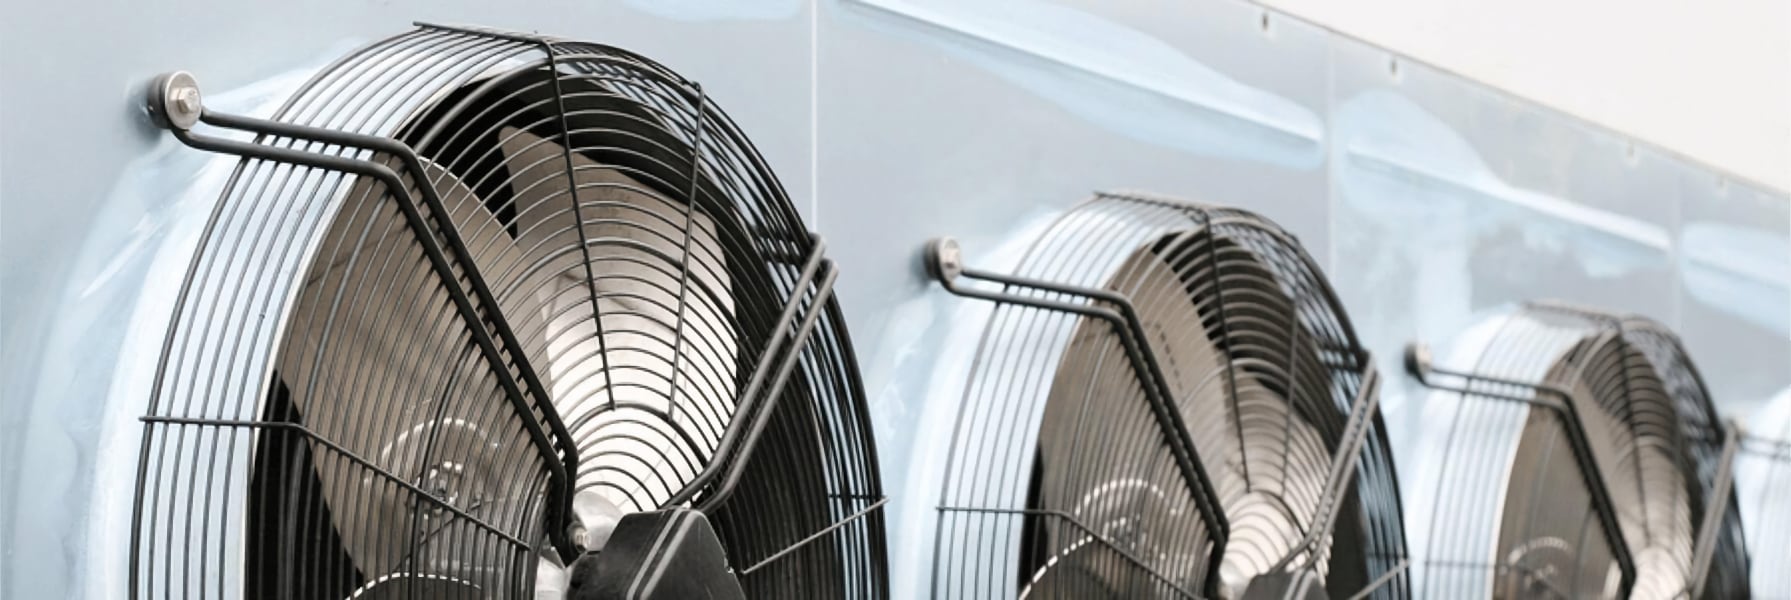 Как подобрать канальный вентилятор для вентиляционной системы